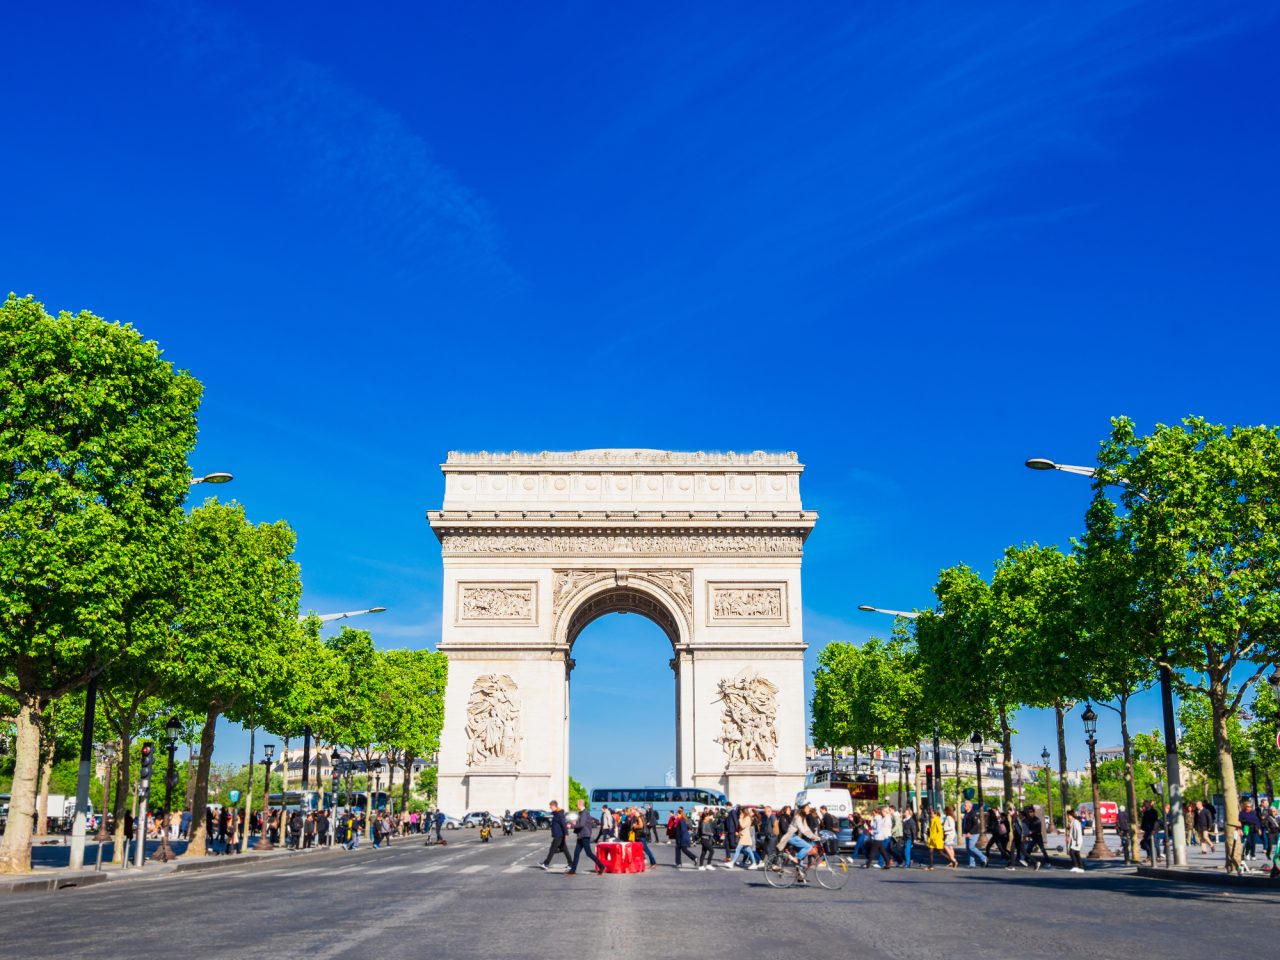 「凱旋門」の英語は？パリのエトワール凱旋門や凱旋門賞など有名どころの表現を紹介